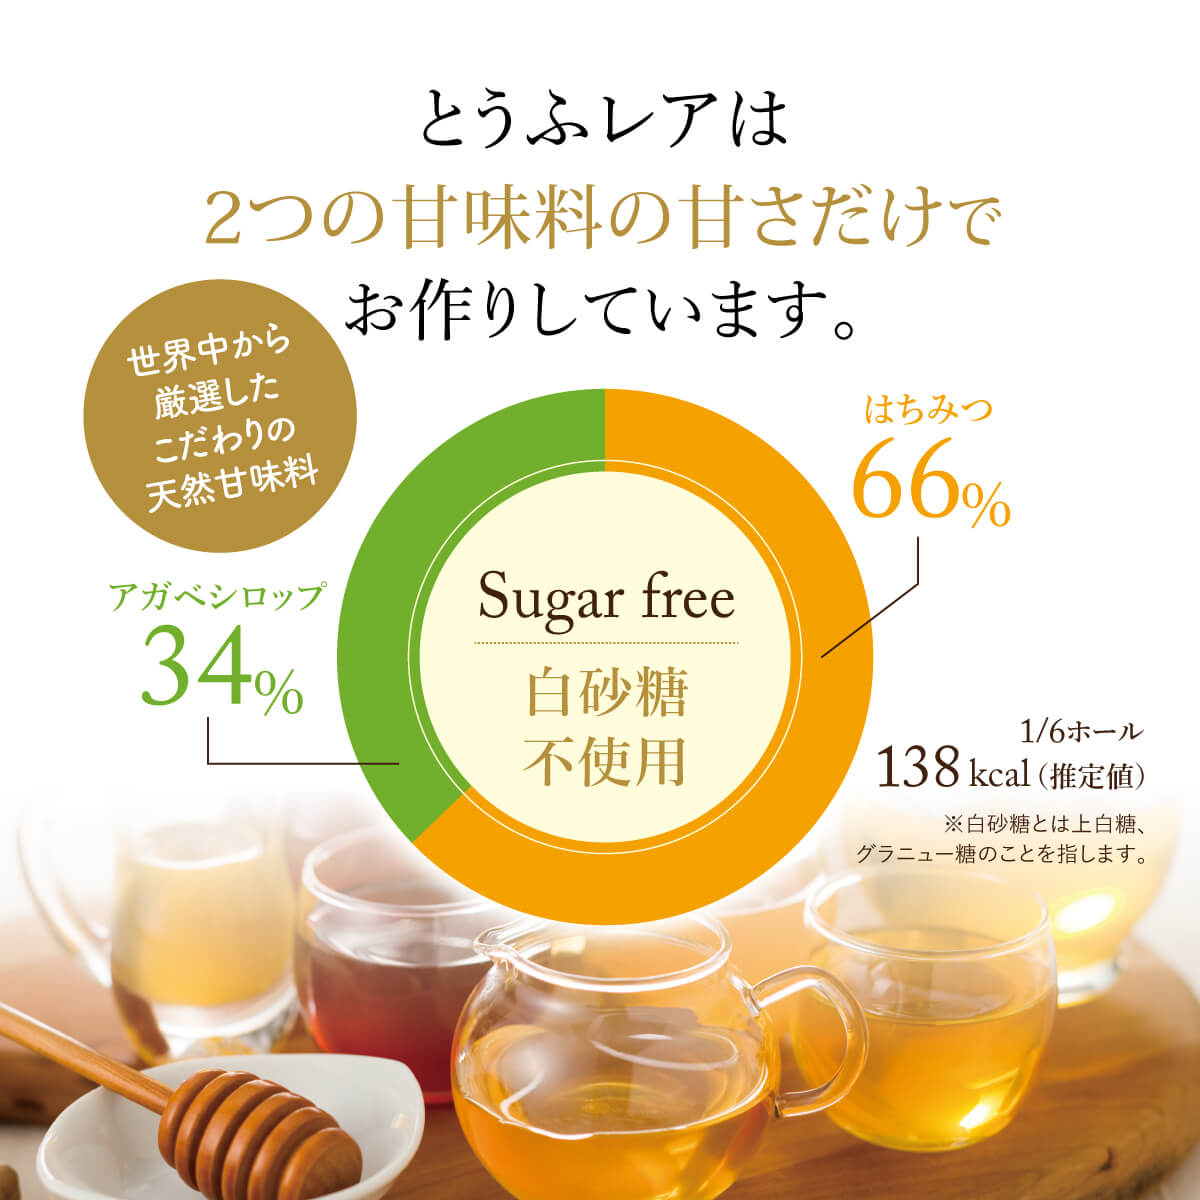 とうふレアは2つの甘味料の甘さだけでお作りしています。世界中から厳選したこだわりの天然甘味料。はちみつ66%、アガベシロップ34%、白砂糖不使用。1/6ホール 138kcal(推定値)。※白砂糖とは、上白糖、グラニュー糖のことを指します。